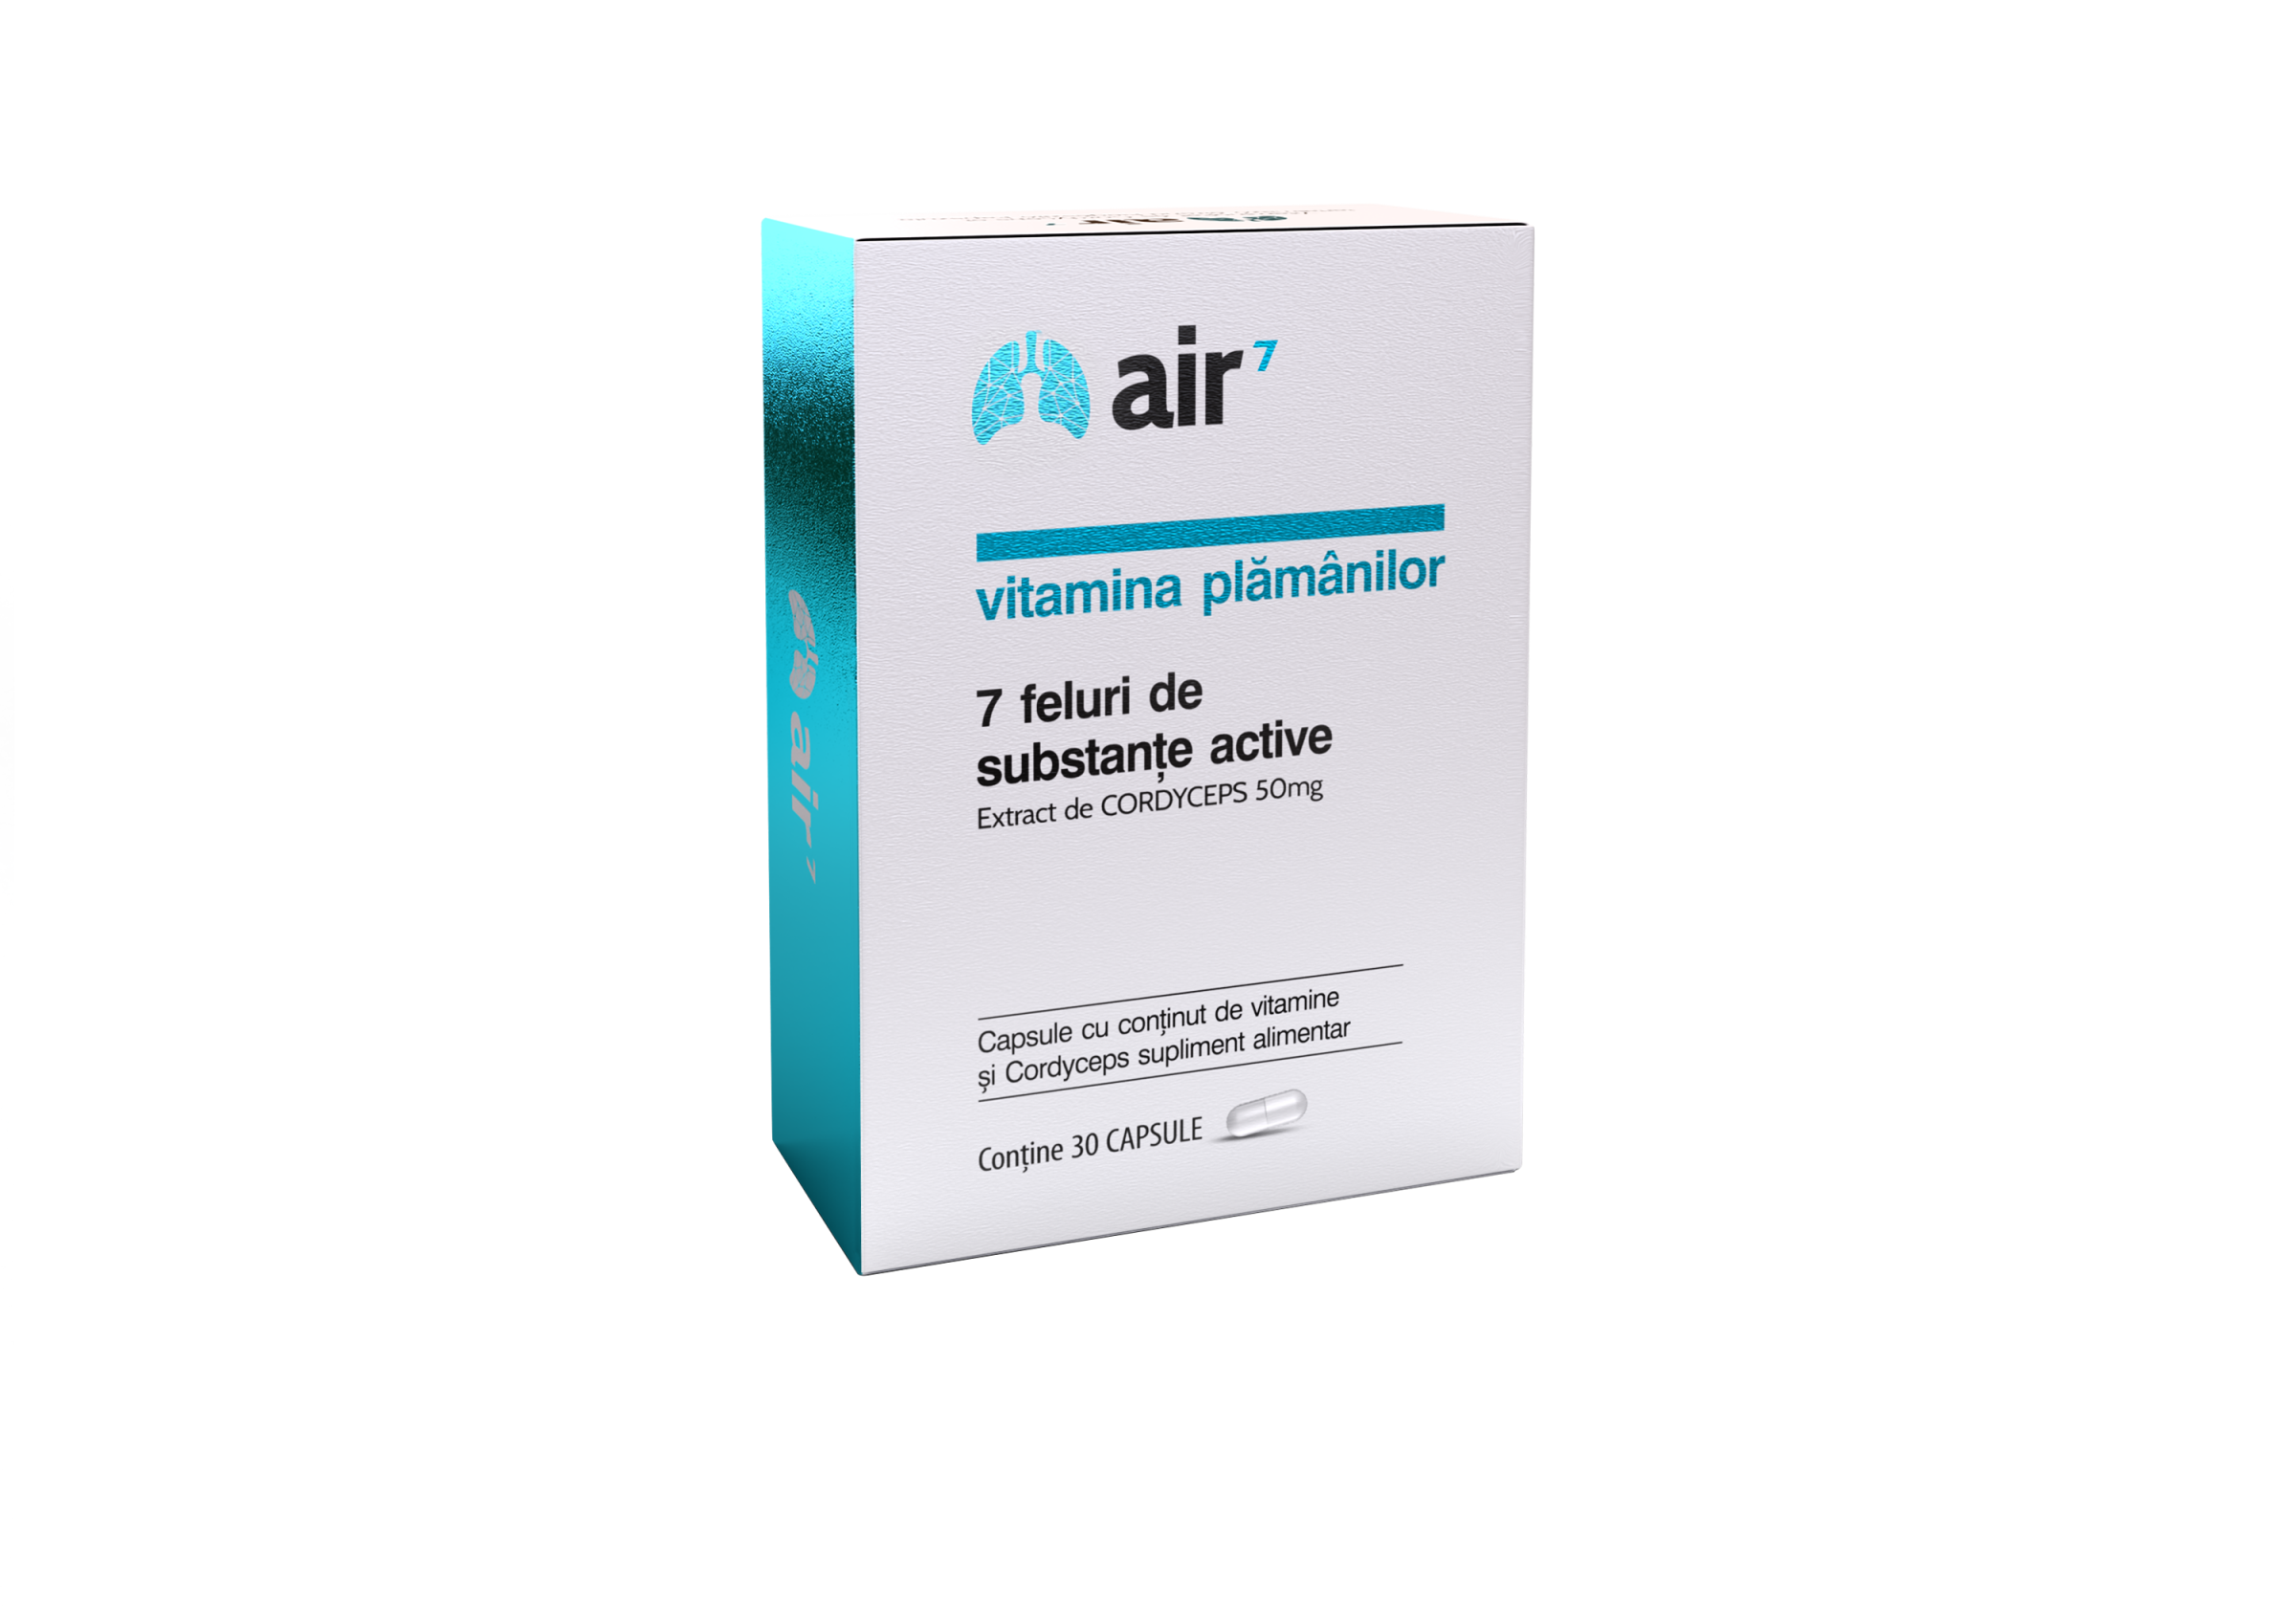 Air 7 Vitamina plamanilor, 30 capsule, Green Splid